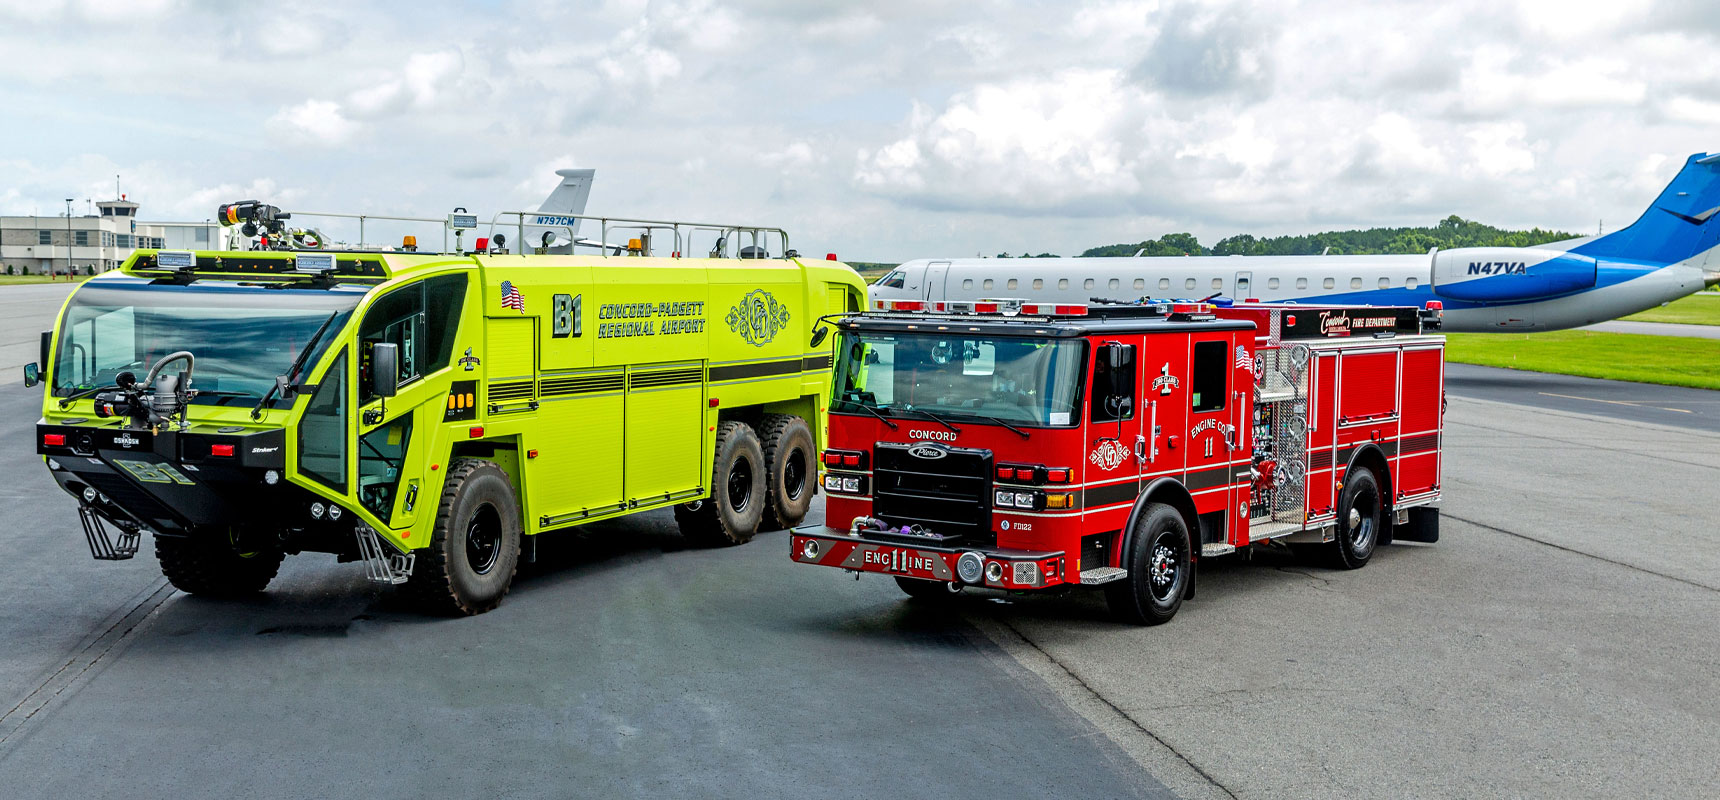 munipcal-fire-truck-and-airport-fire-truck